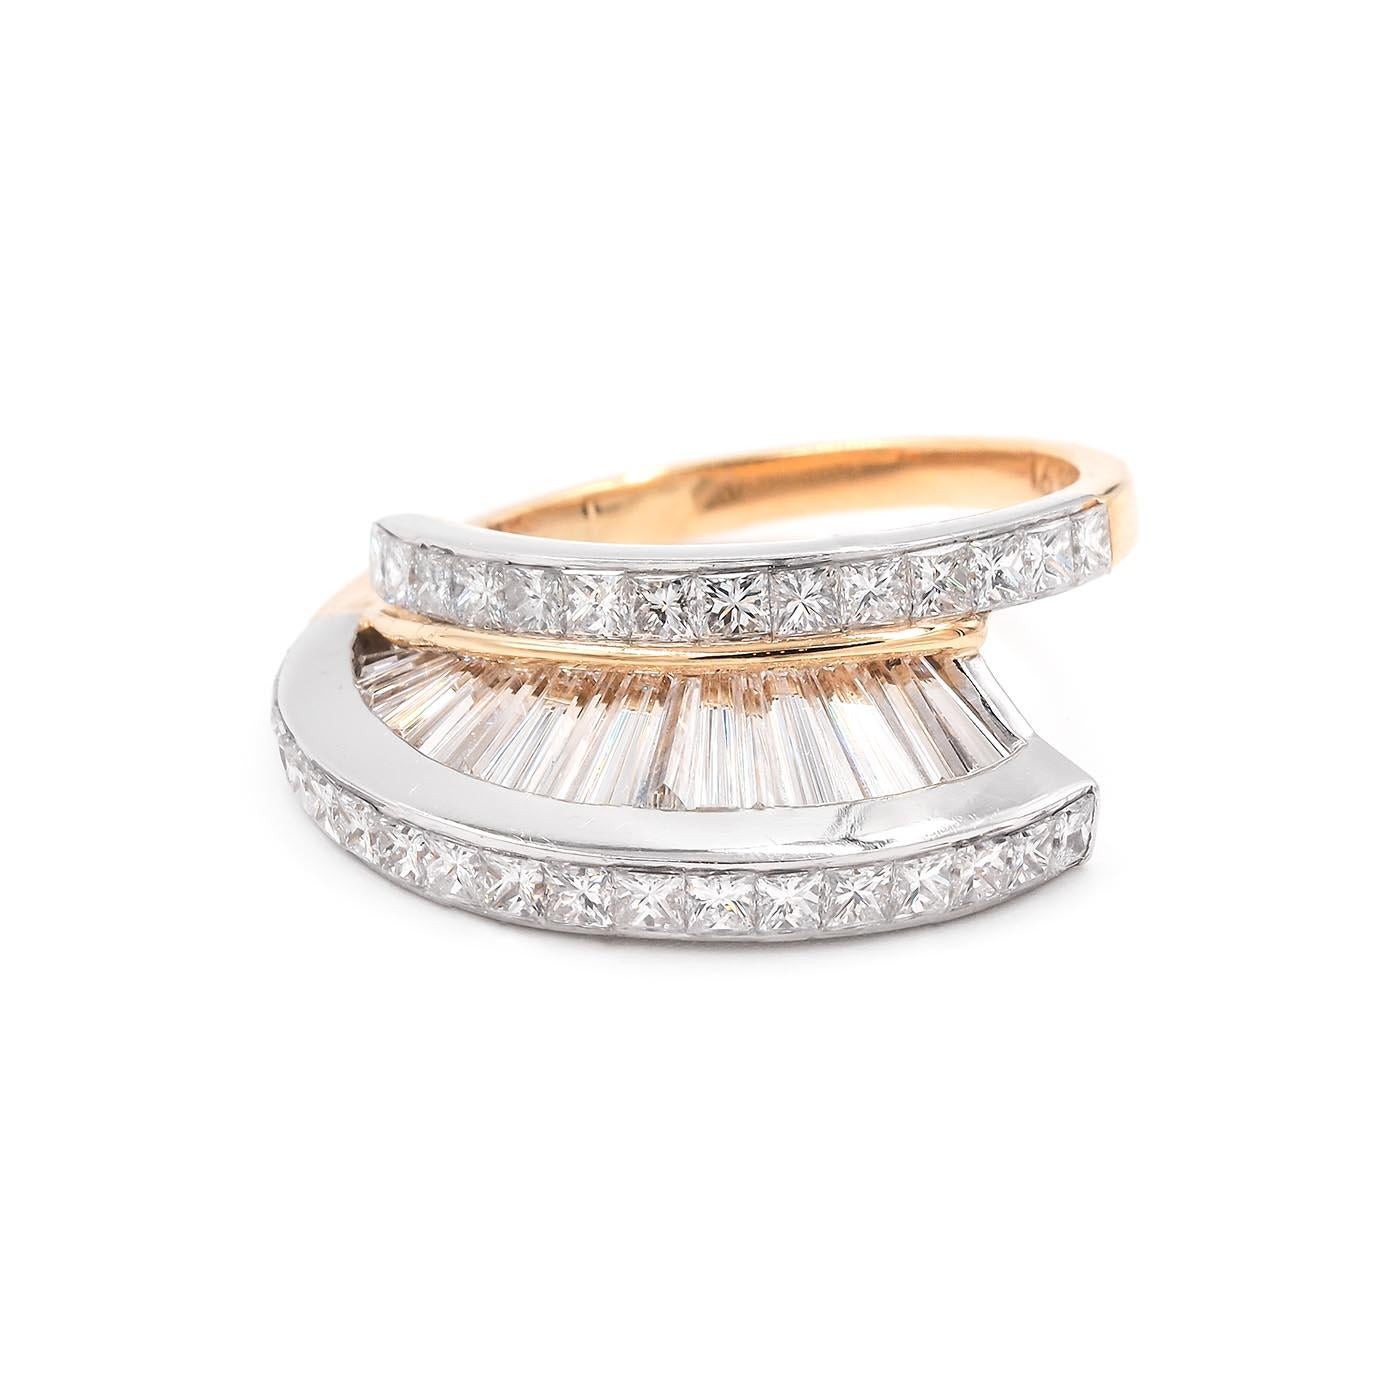 Vintage Baguette Cut & Princess Cut Diamond 'Fan' Ring Set by MWI Eloquence For Sale 2